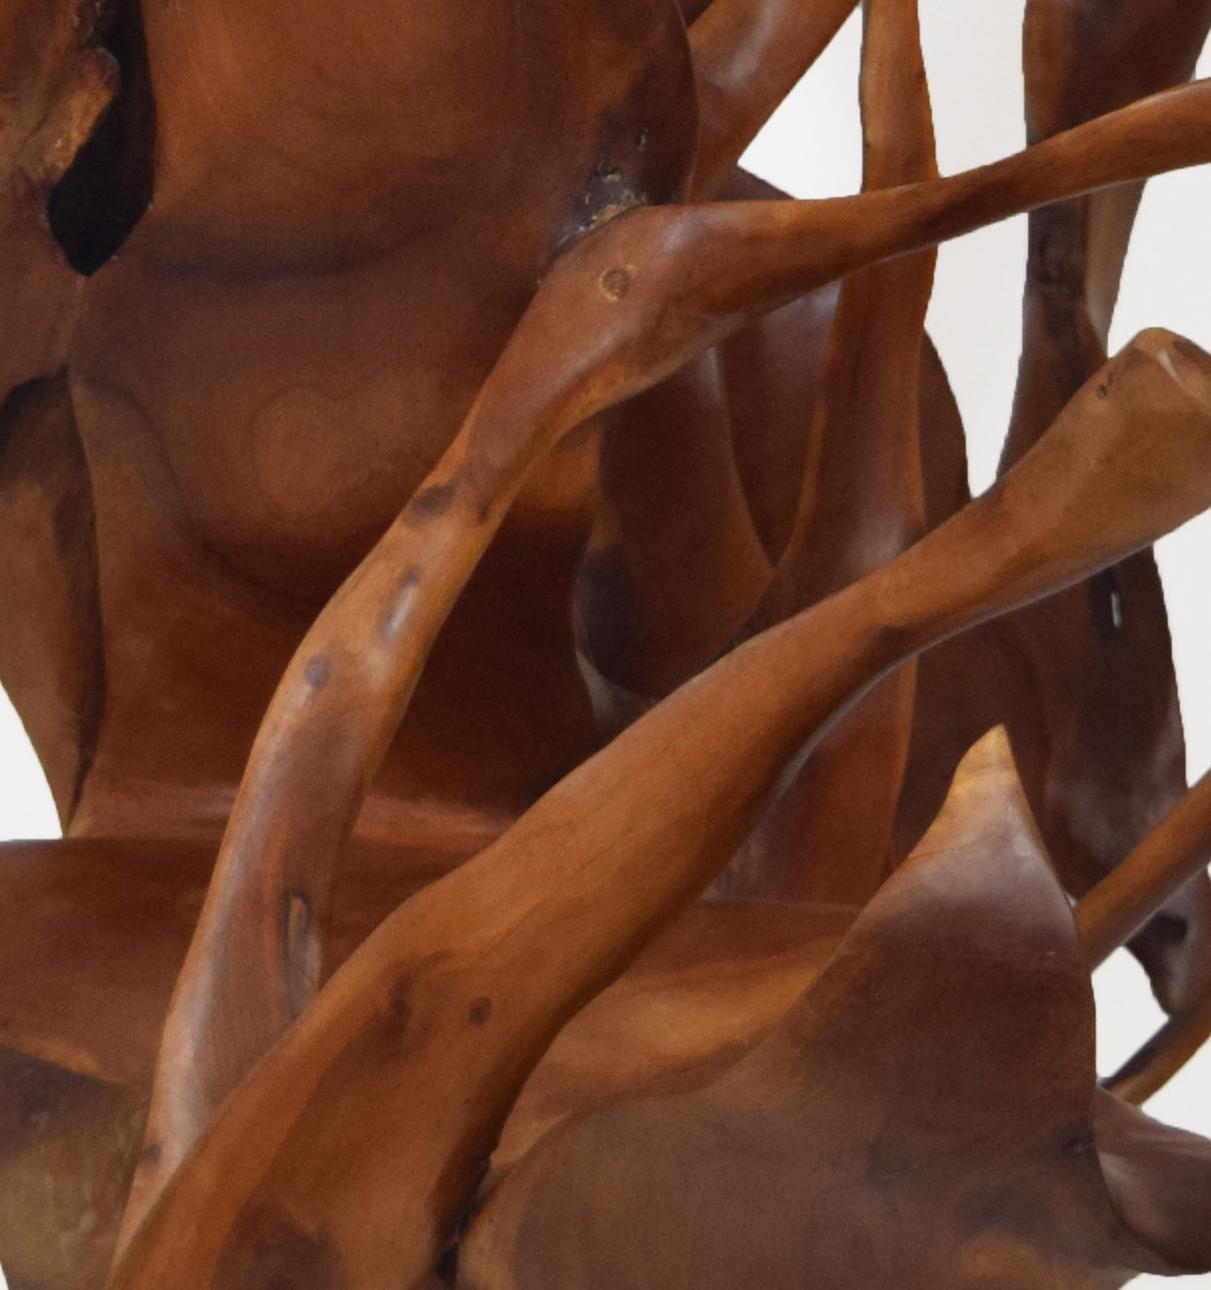 Mahagoni-Wurzeln

Die Joaquim Ingravidesa Sculpture Alliance besteht aus einer internationalen Gruppe von Bildhauern und Designern, die zusammenarbeiten, um abstrakte, von der Natur inspirierte Skulpturen zu schaffen. Sie arbeiten oft monatelang